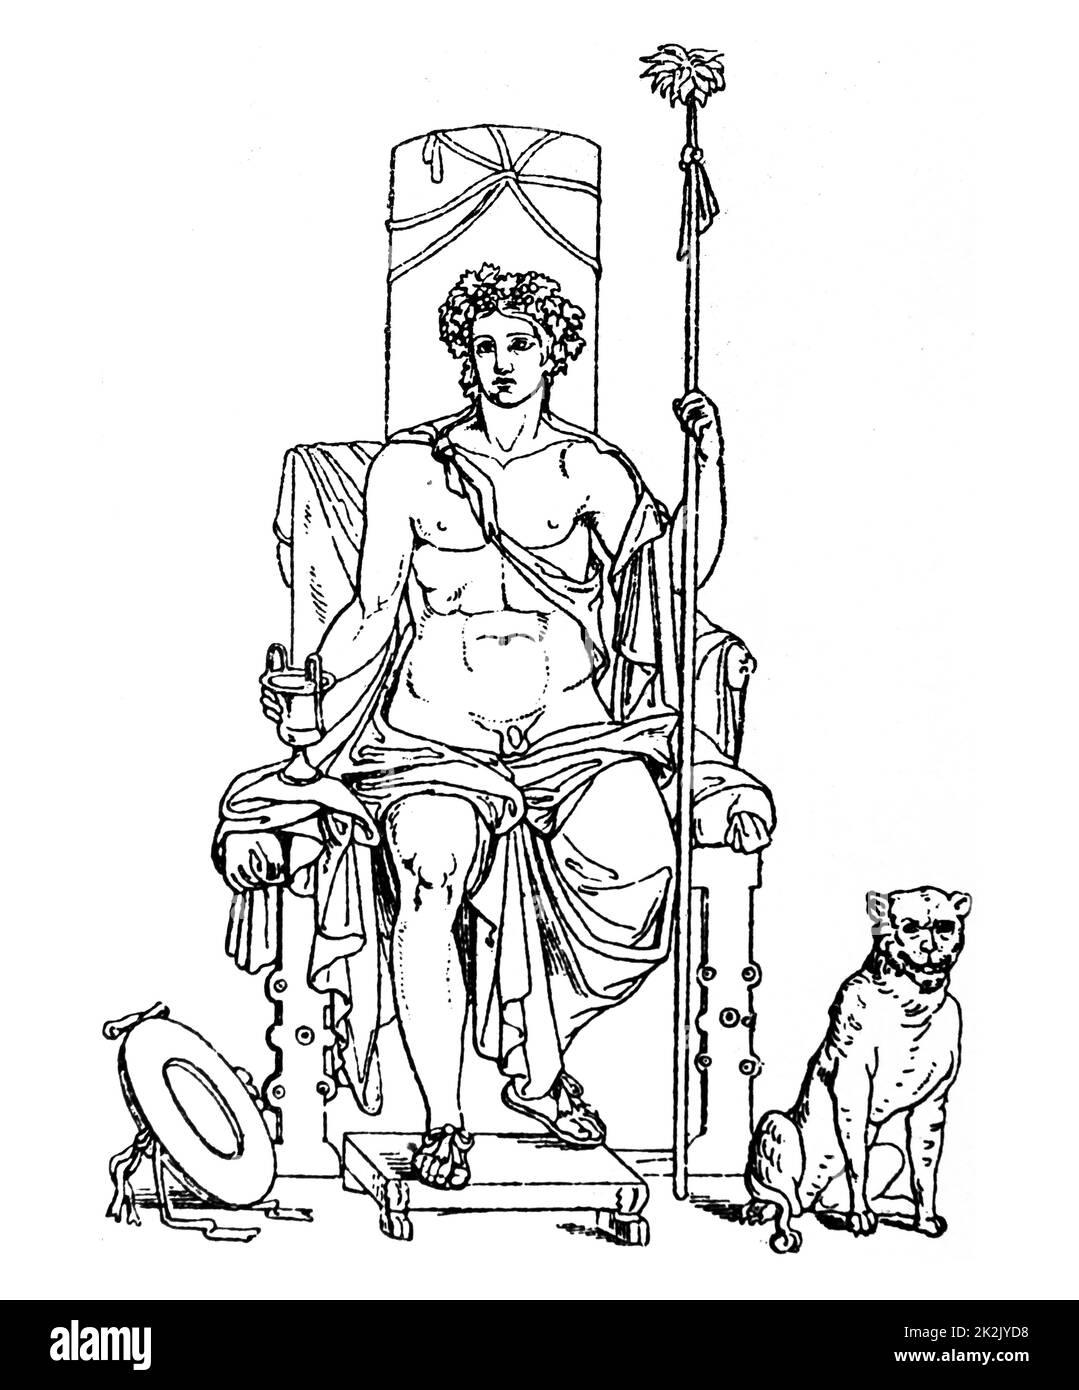 Illustration d'une sculpture grecque représentant le culte de Dionysos, dieu de la vigne, vendanges, vinification, le vin, la folie, l'extase religieuse rituelle, et le théâtre. Banque D'Images